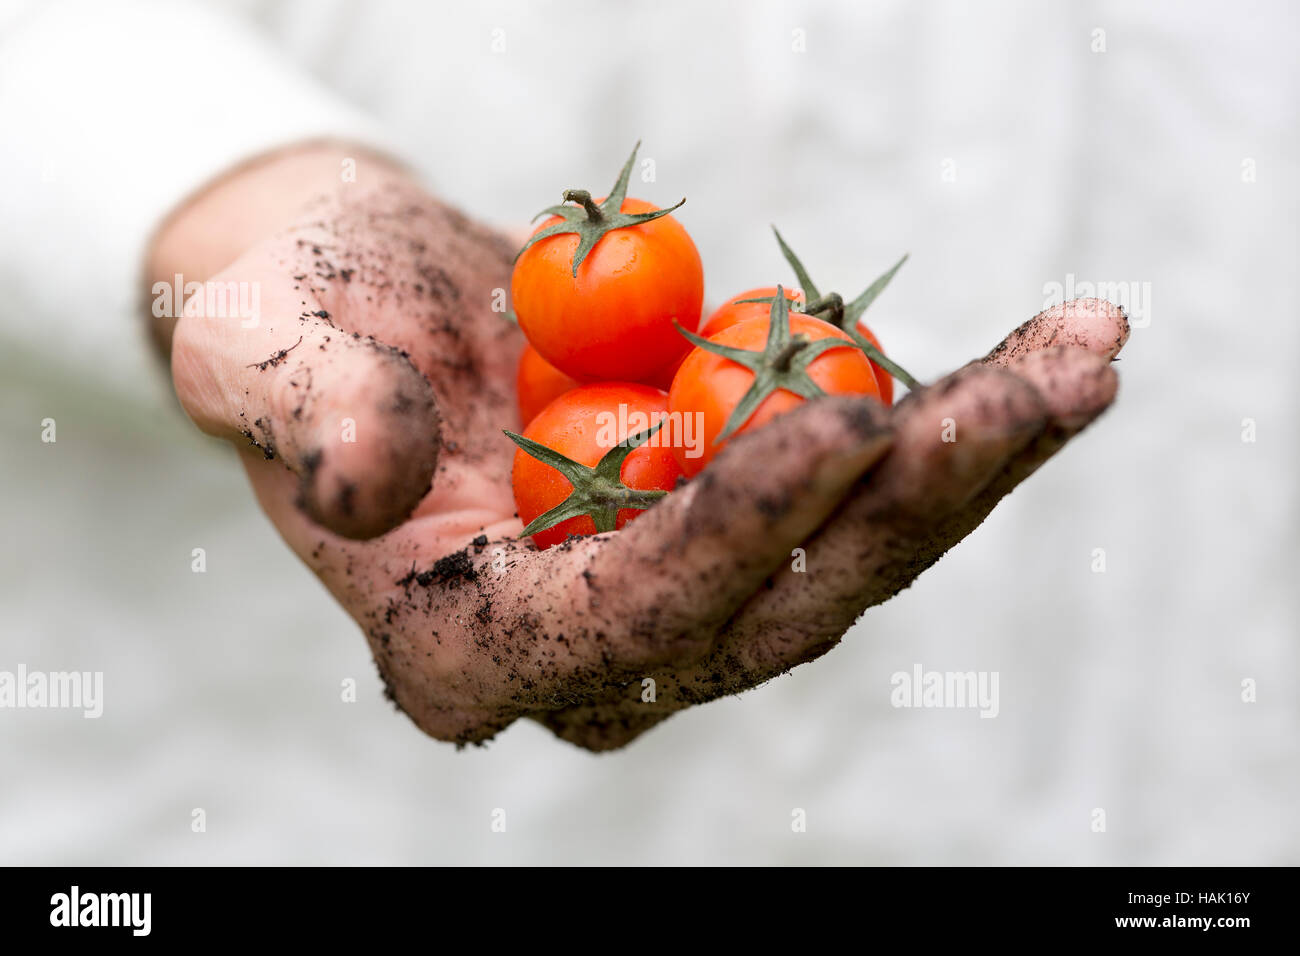 farmer hand full of fresh cherry tomatoes Stock Photo